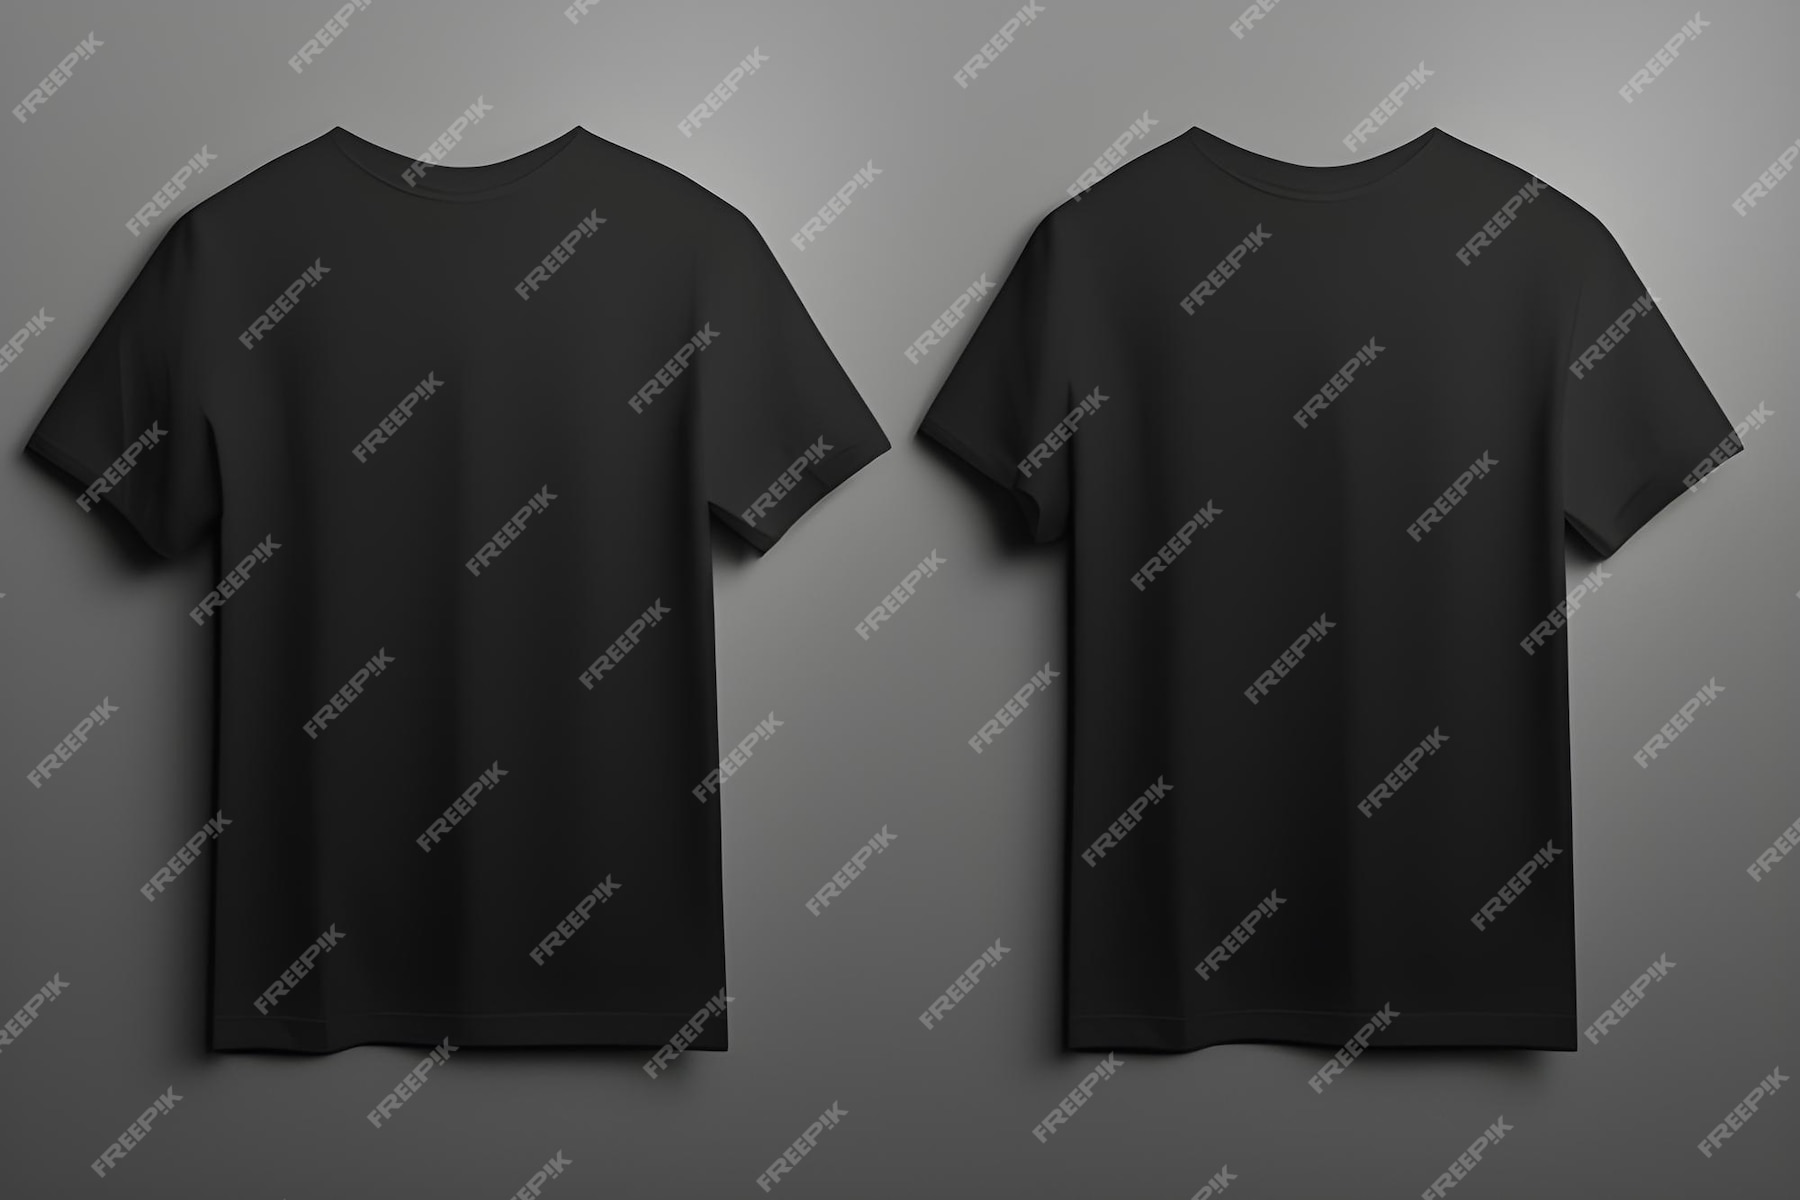 Premium AI Image | Black Tshirt Mockup Isolated On Grey Background